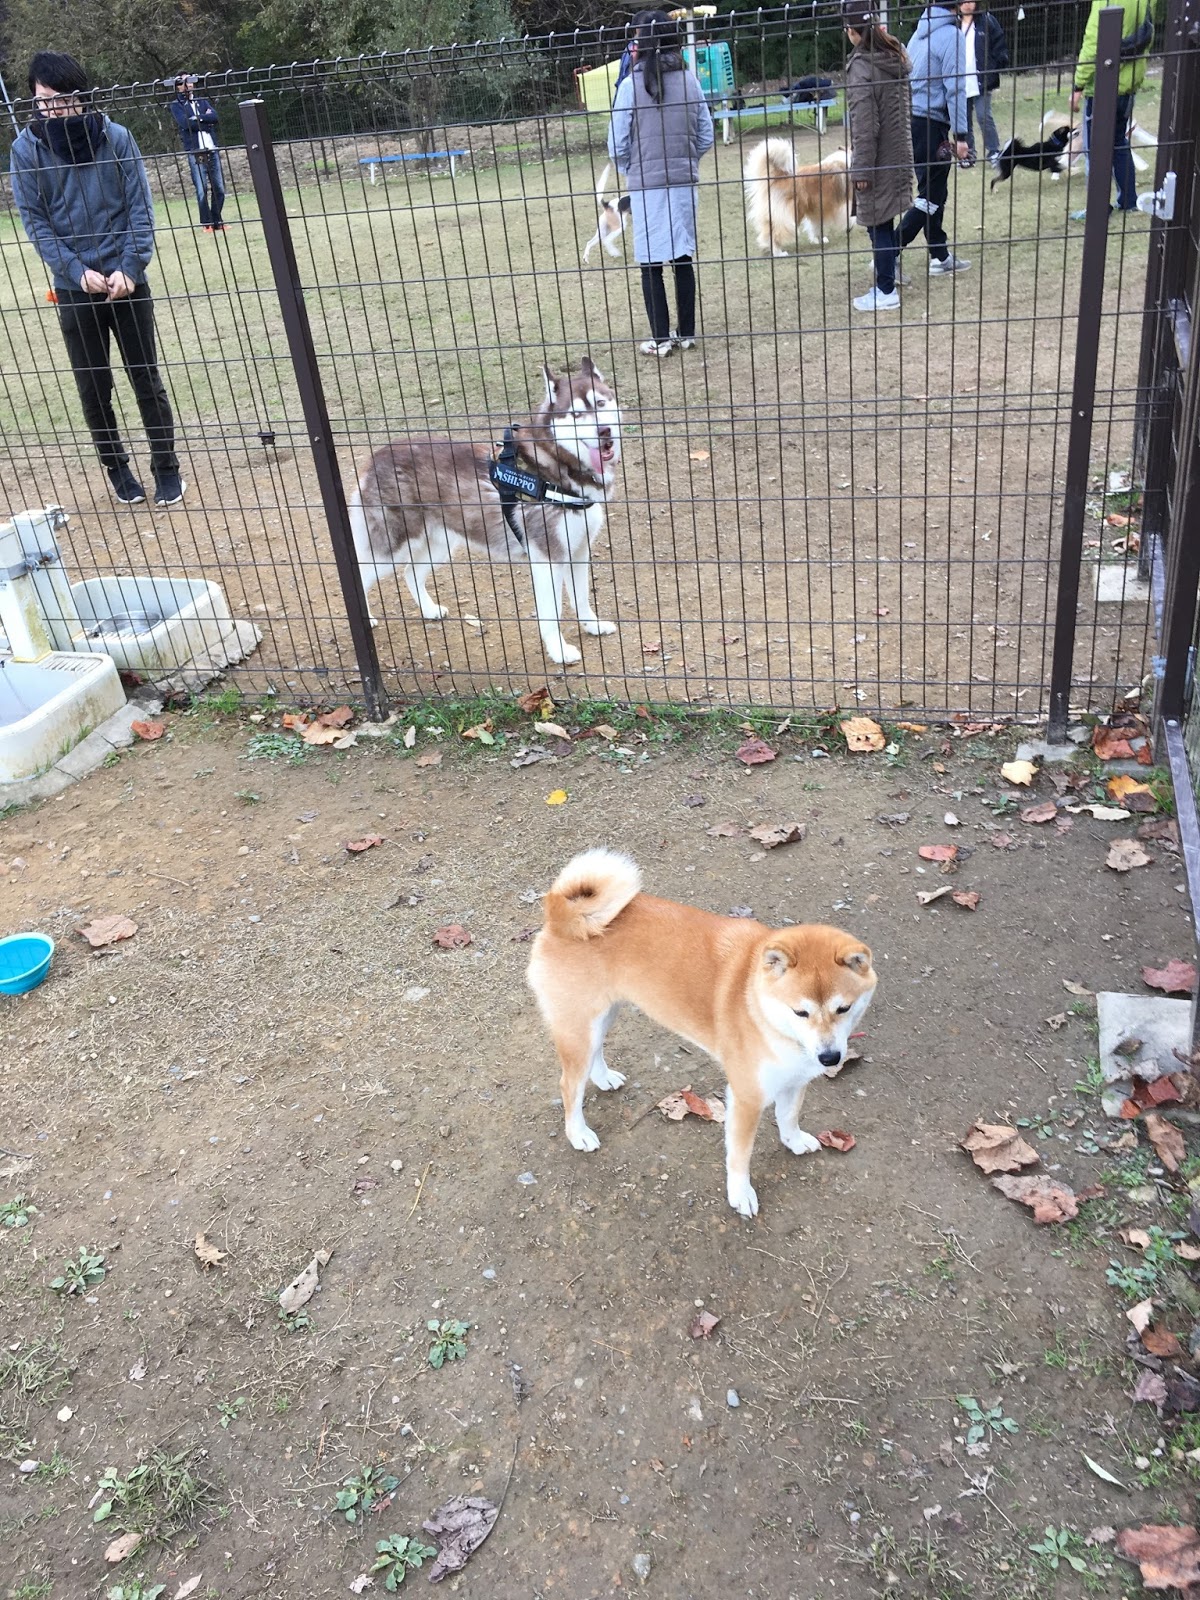 Tôi đã đi đến công viên chó chạy ở thành phố Gifu Nhật Bản